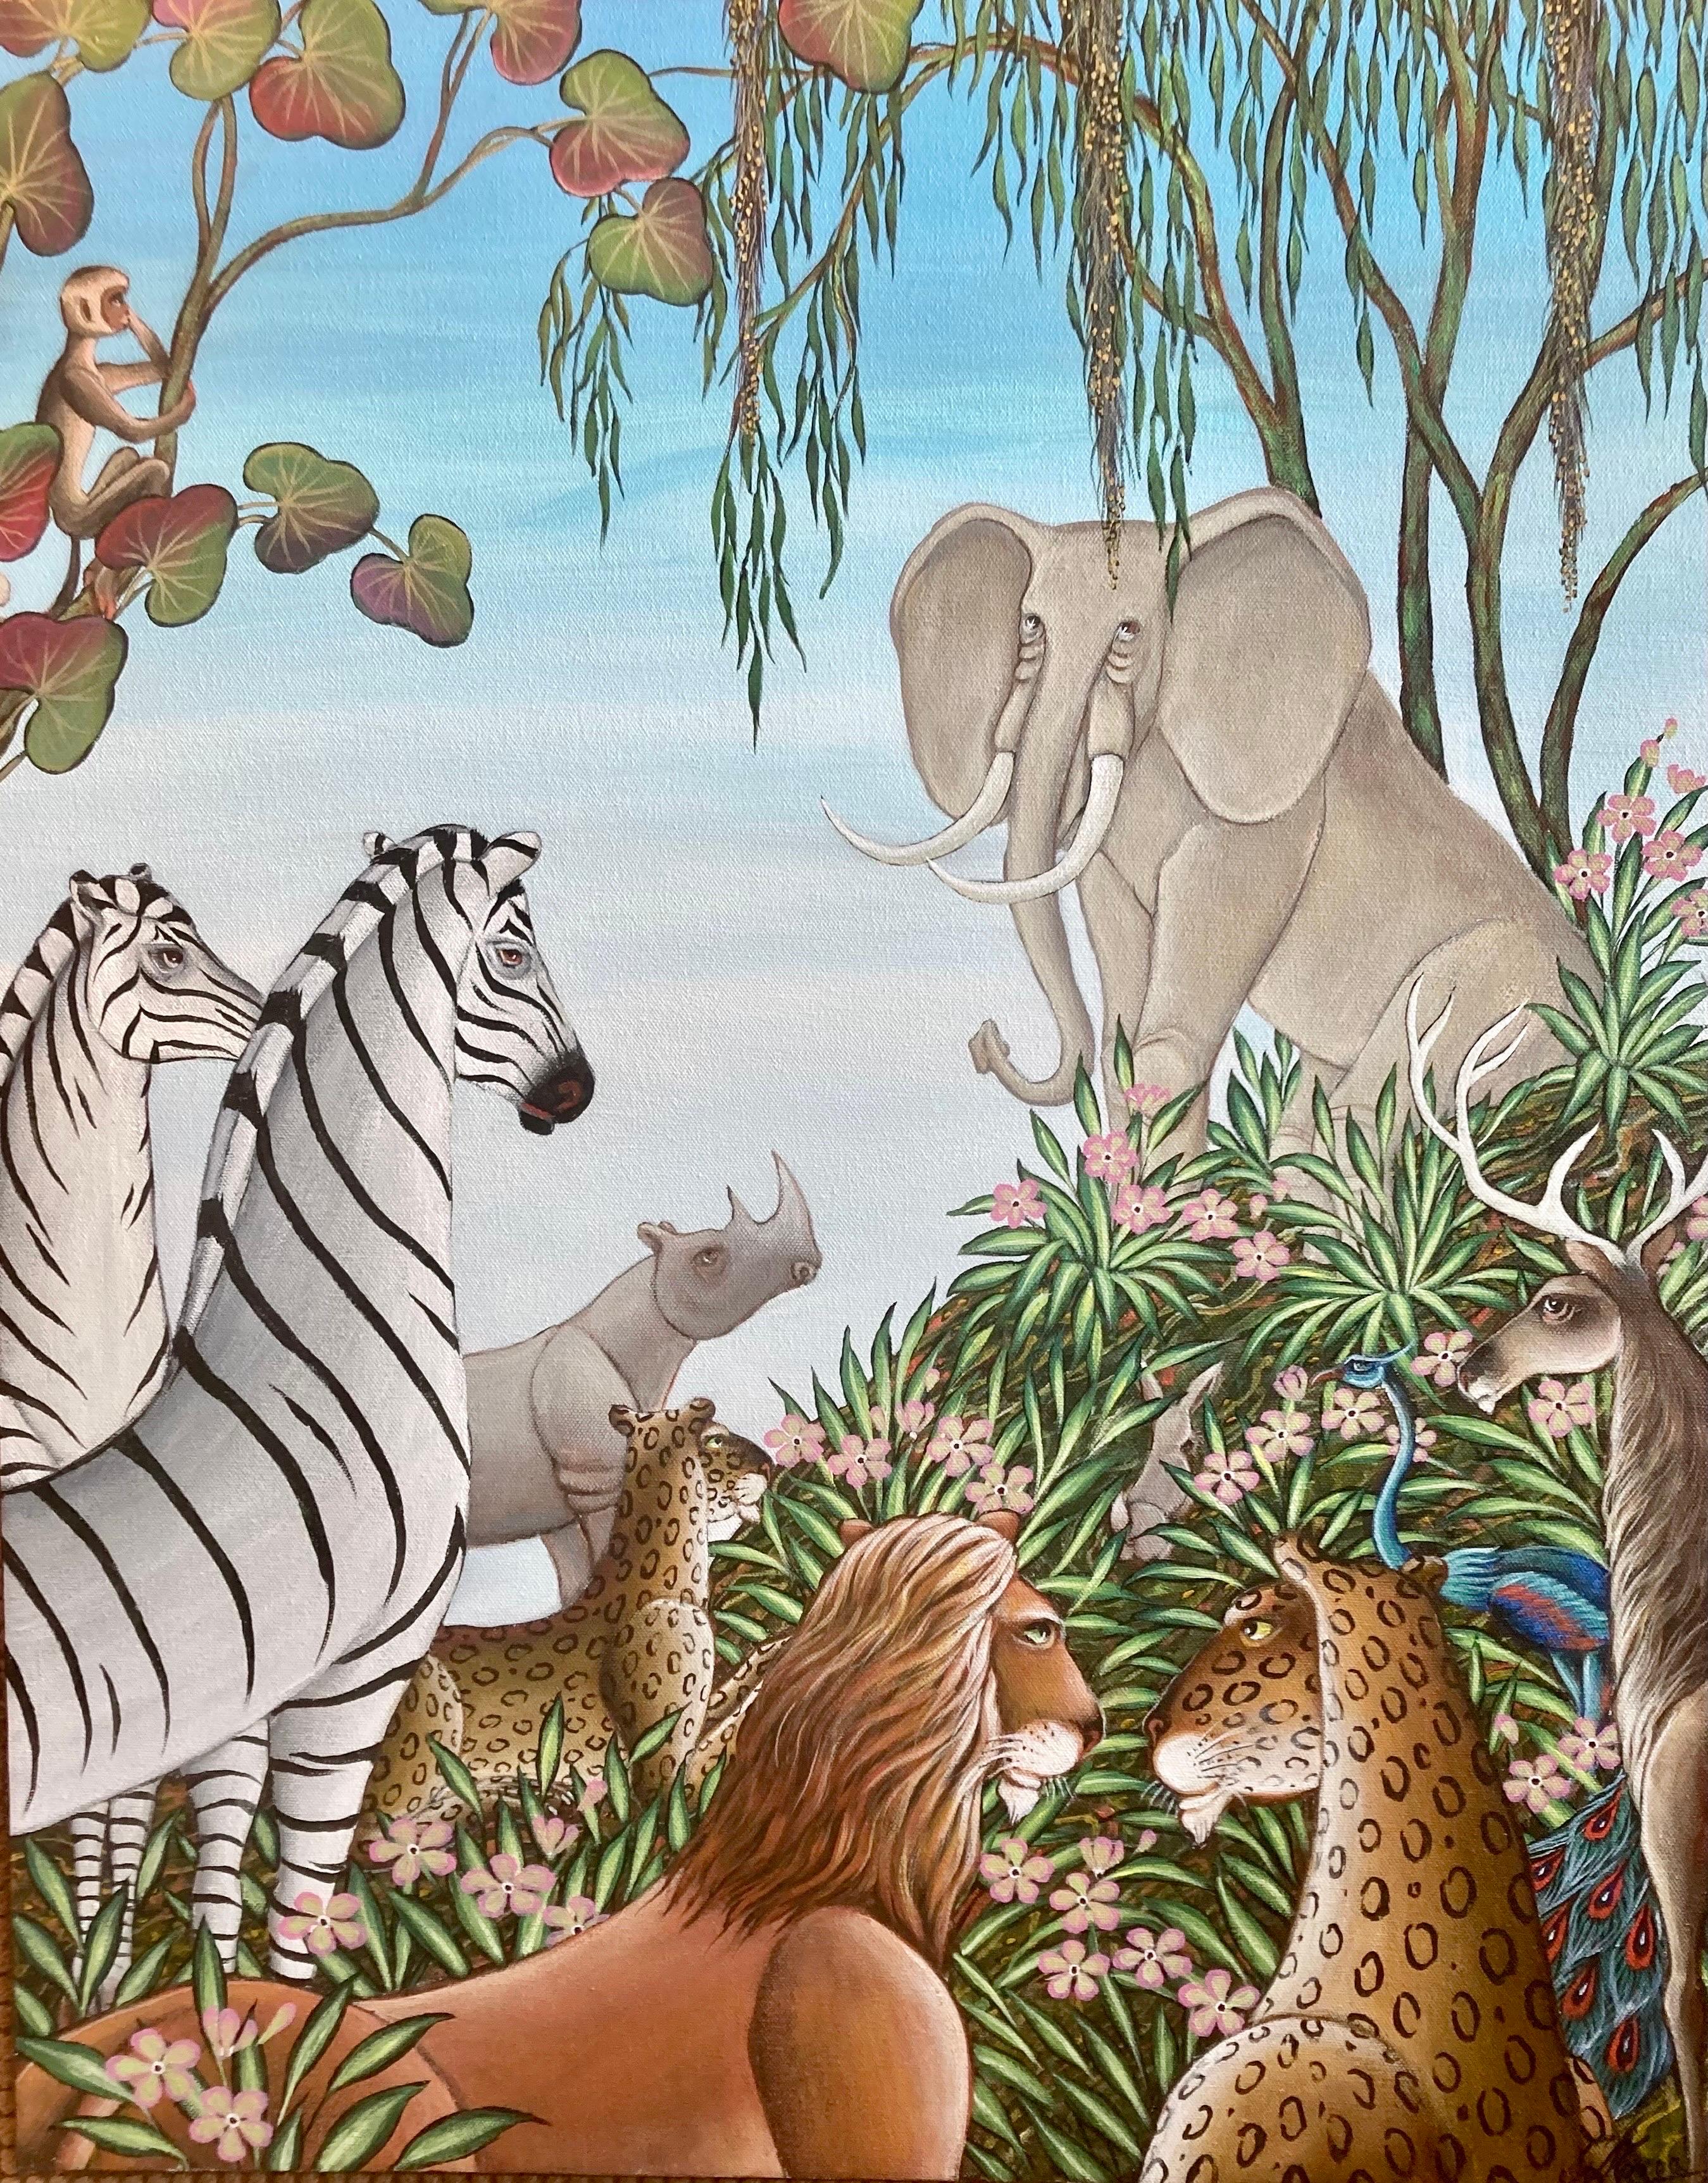 Originalgemälde Elefant, Löwe, Leopard, Zebra und Nashorn Blumen in einer üppigen tropischen Dschungelumgebung. Mit dem Titel "Elefantengedächtnis".
Rekto handsigniert und verso signiert, betitelt und datiert. 
Dies ist in seinem Buch